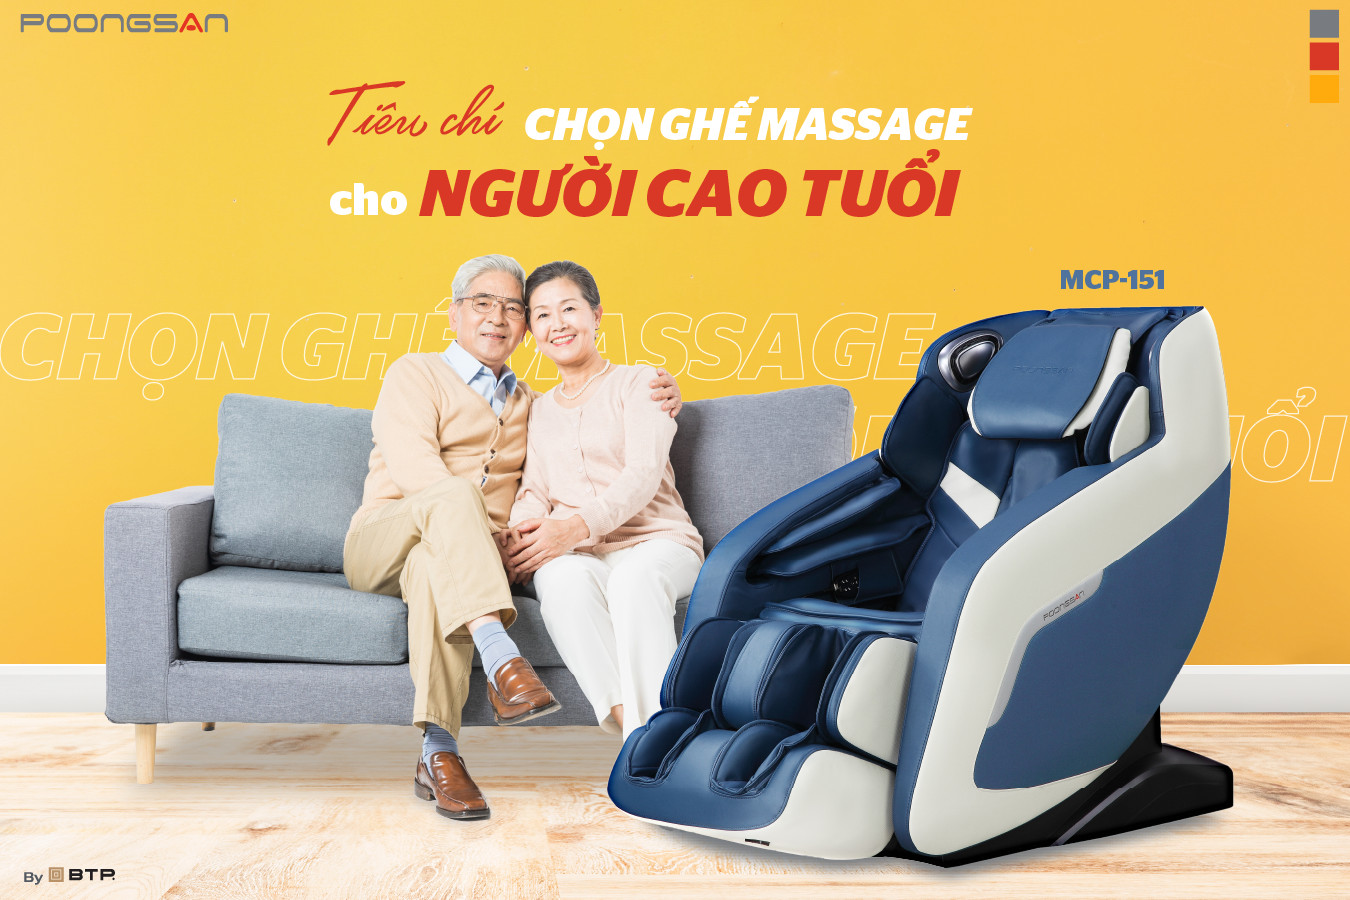 Tiêu chí chọn ghế massage cho người cao tuổi